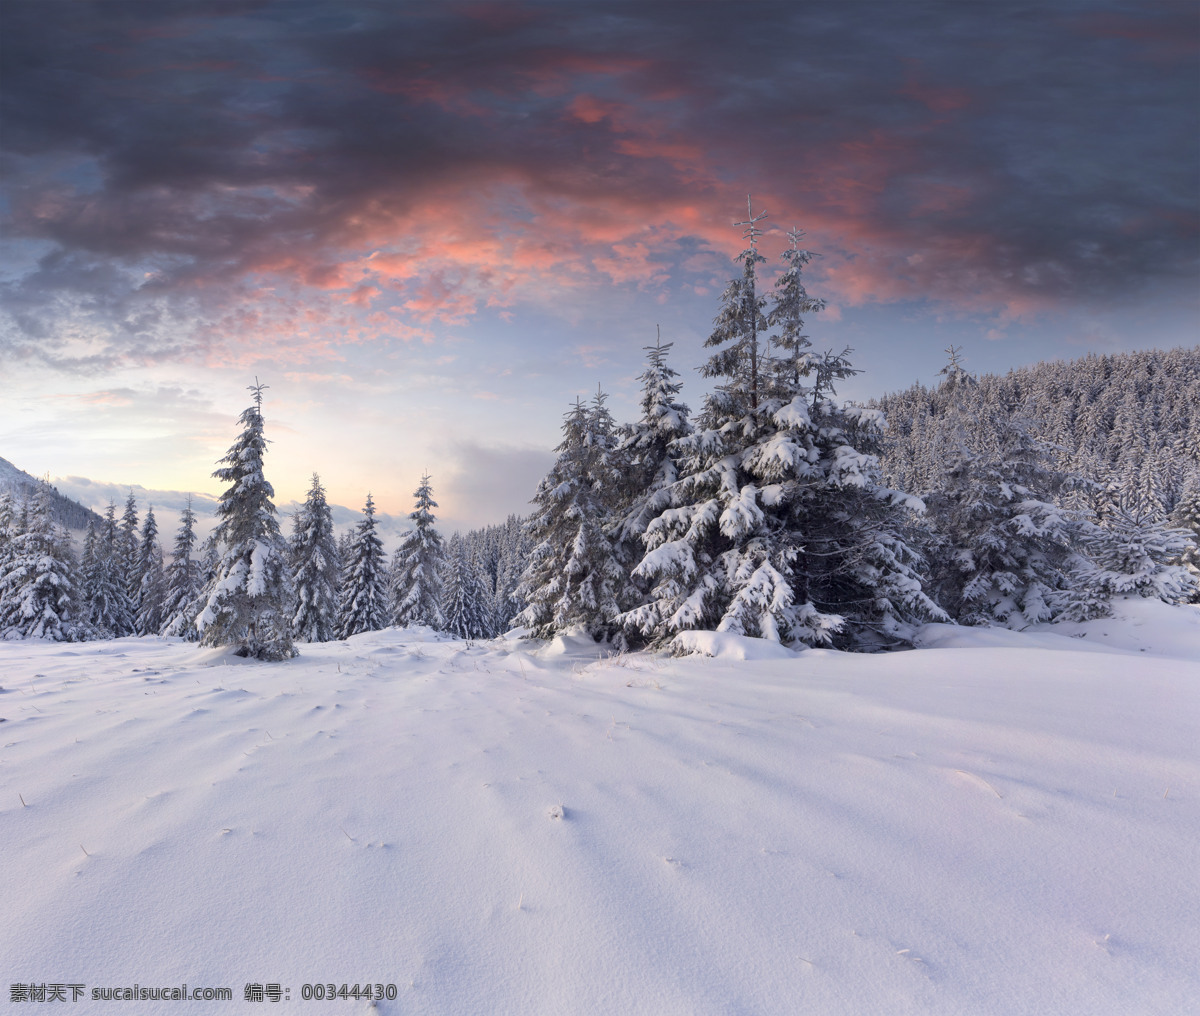 雪地与树林 冬天雪景 雪地 森林雪景 树林雪景 风景摄影 美丽风景 自然风景 自然景观 灰色